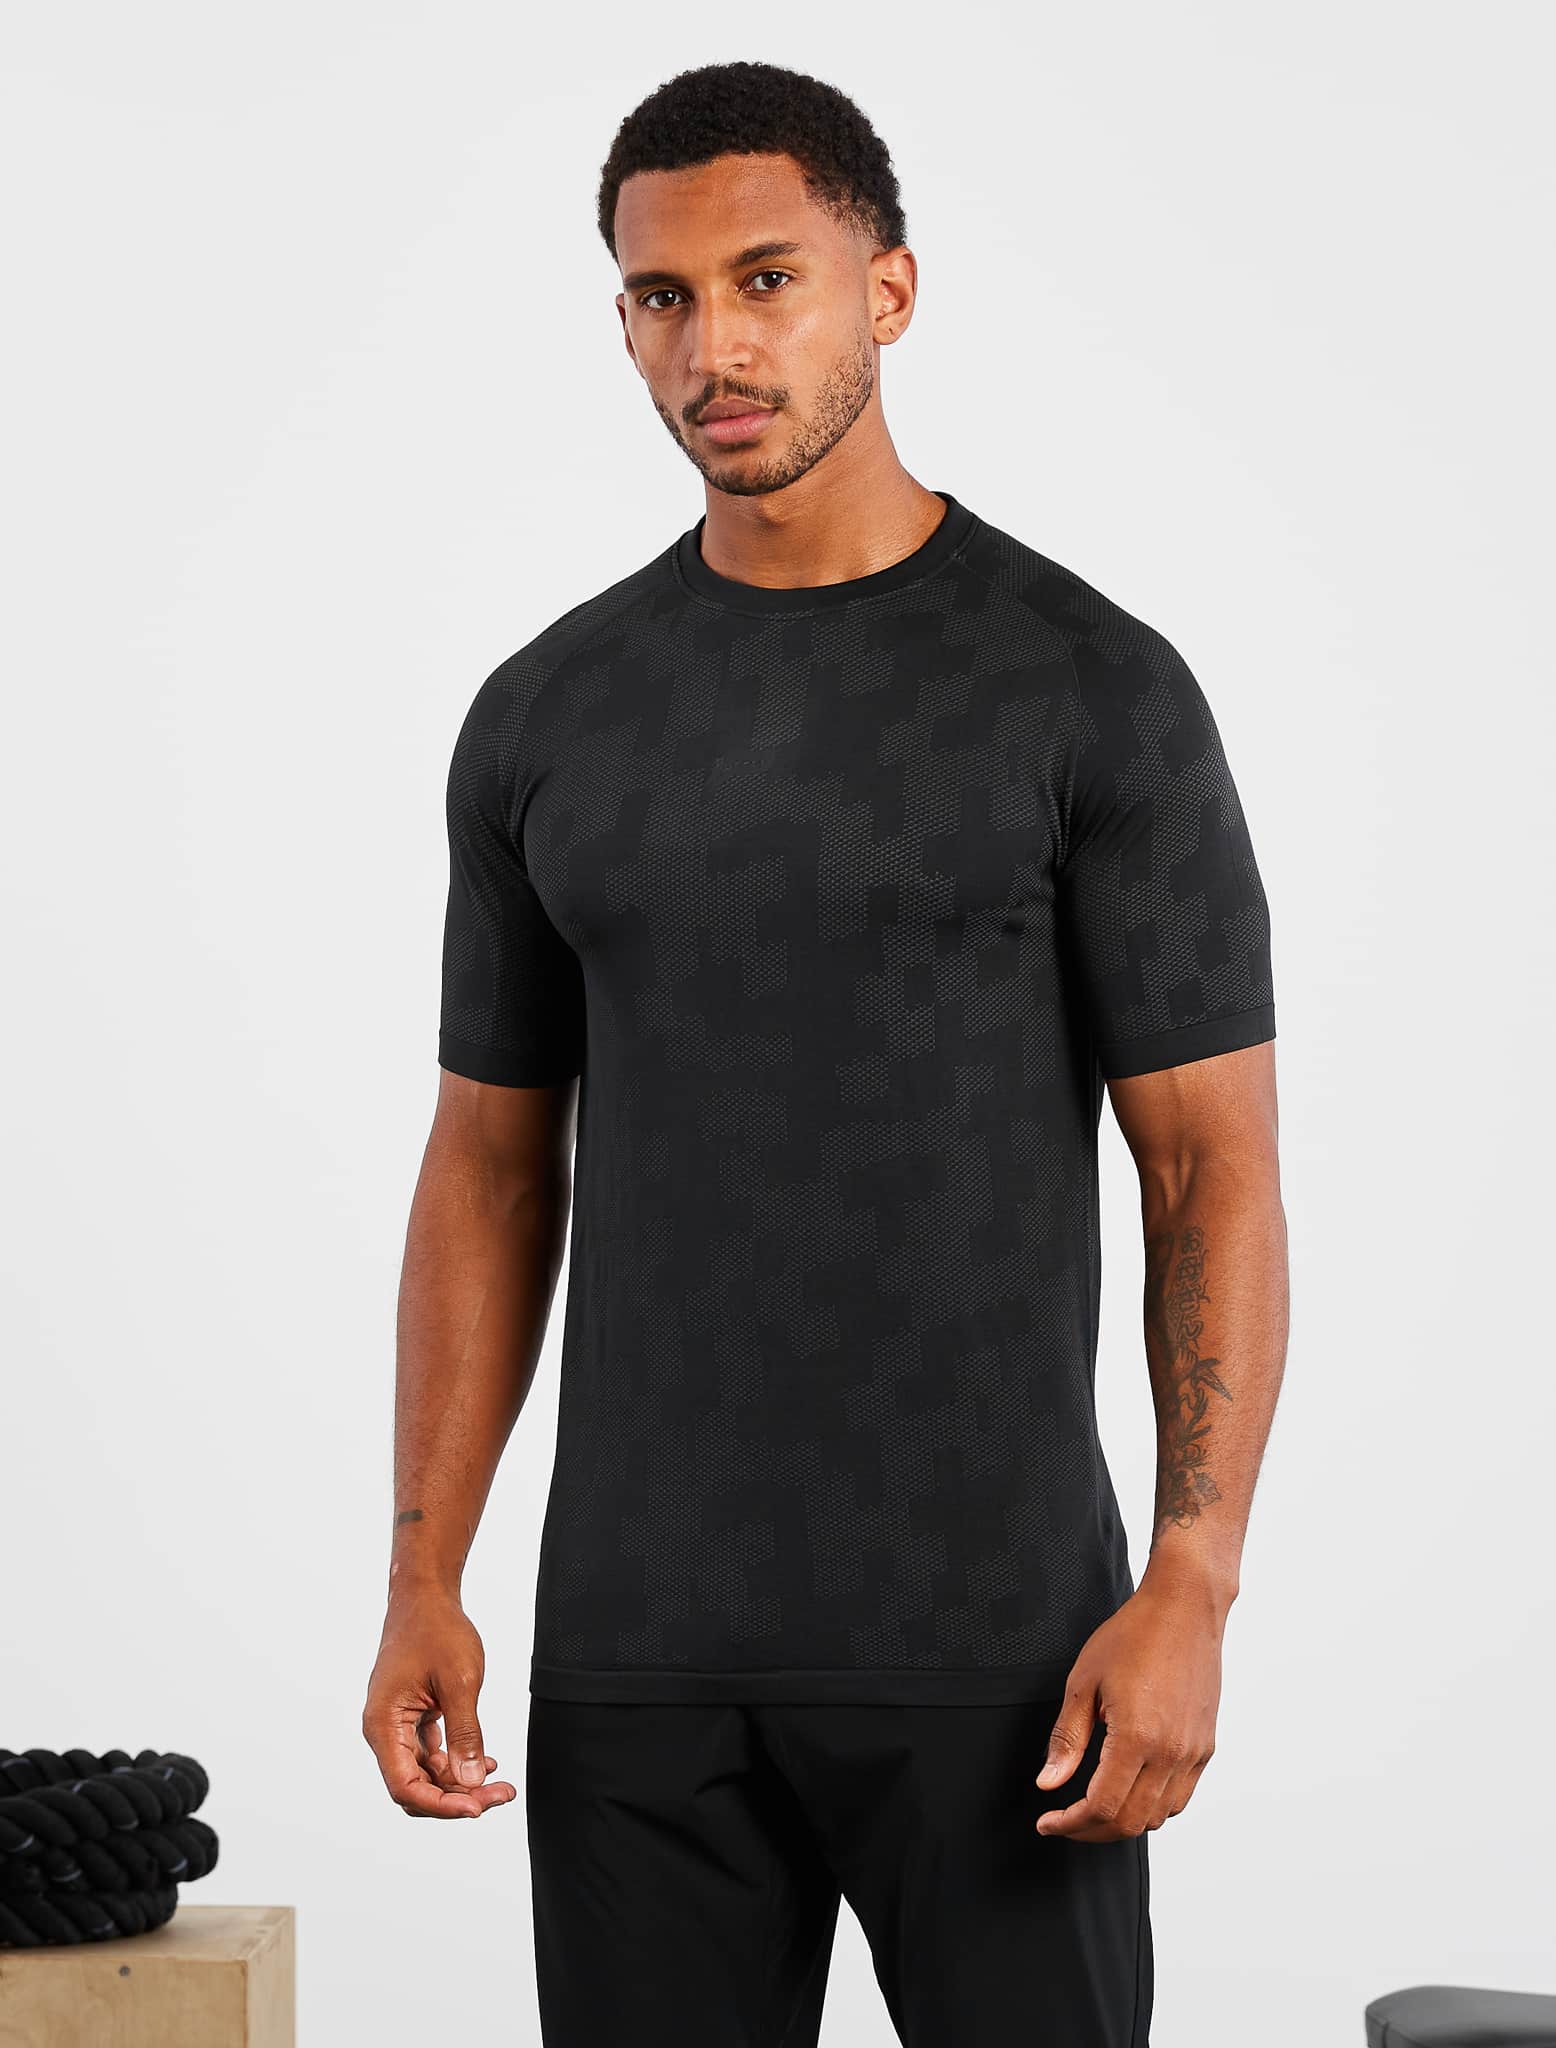 Camo Seamless T-Shirt / Black Pursue Fitness 1